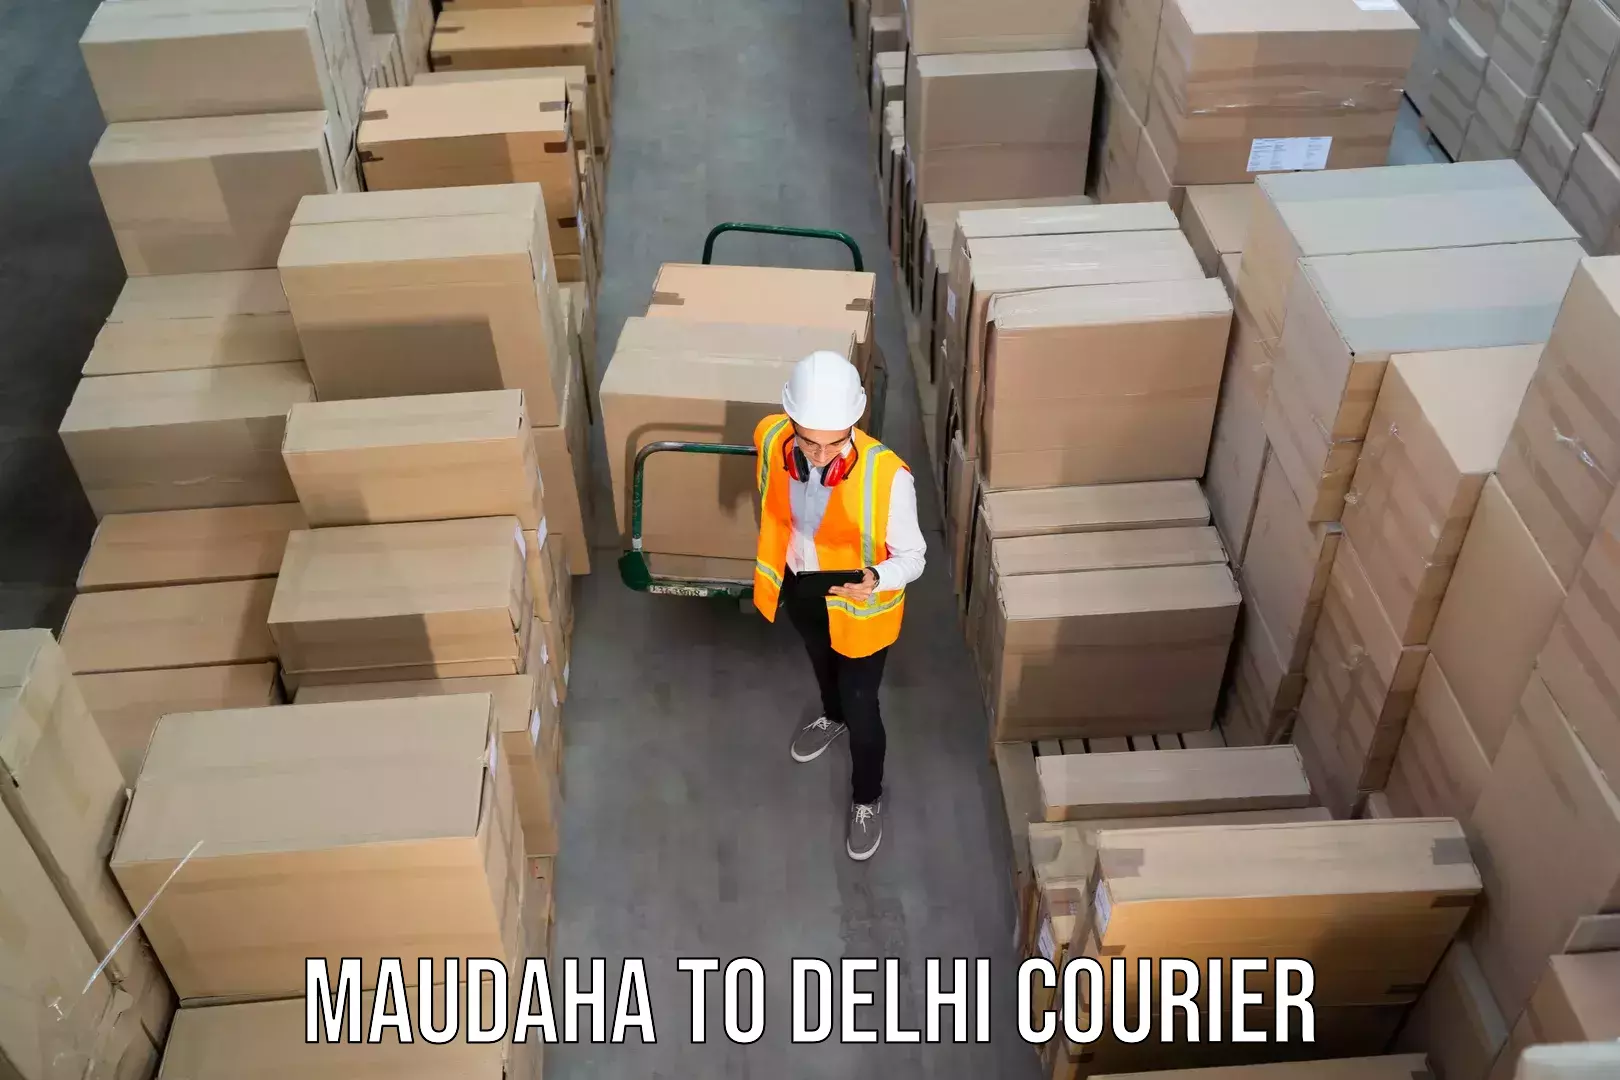 Professional courier handling Maudaha to Delhi